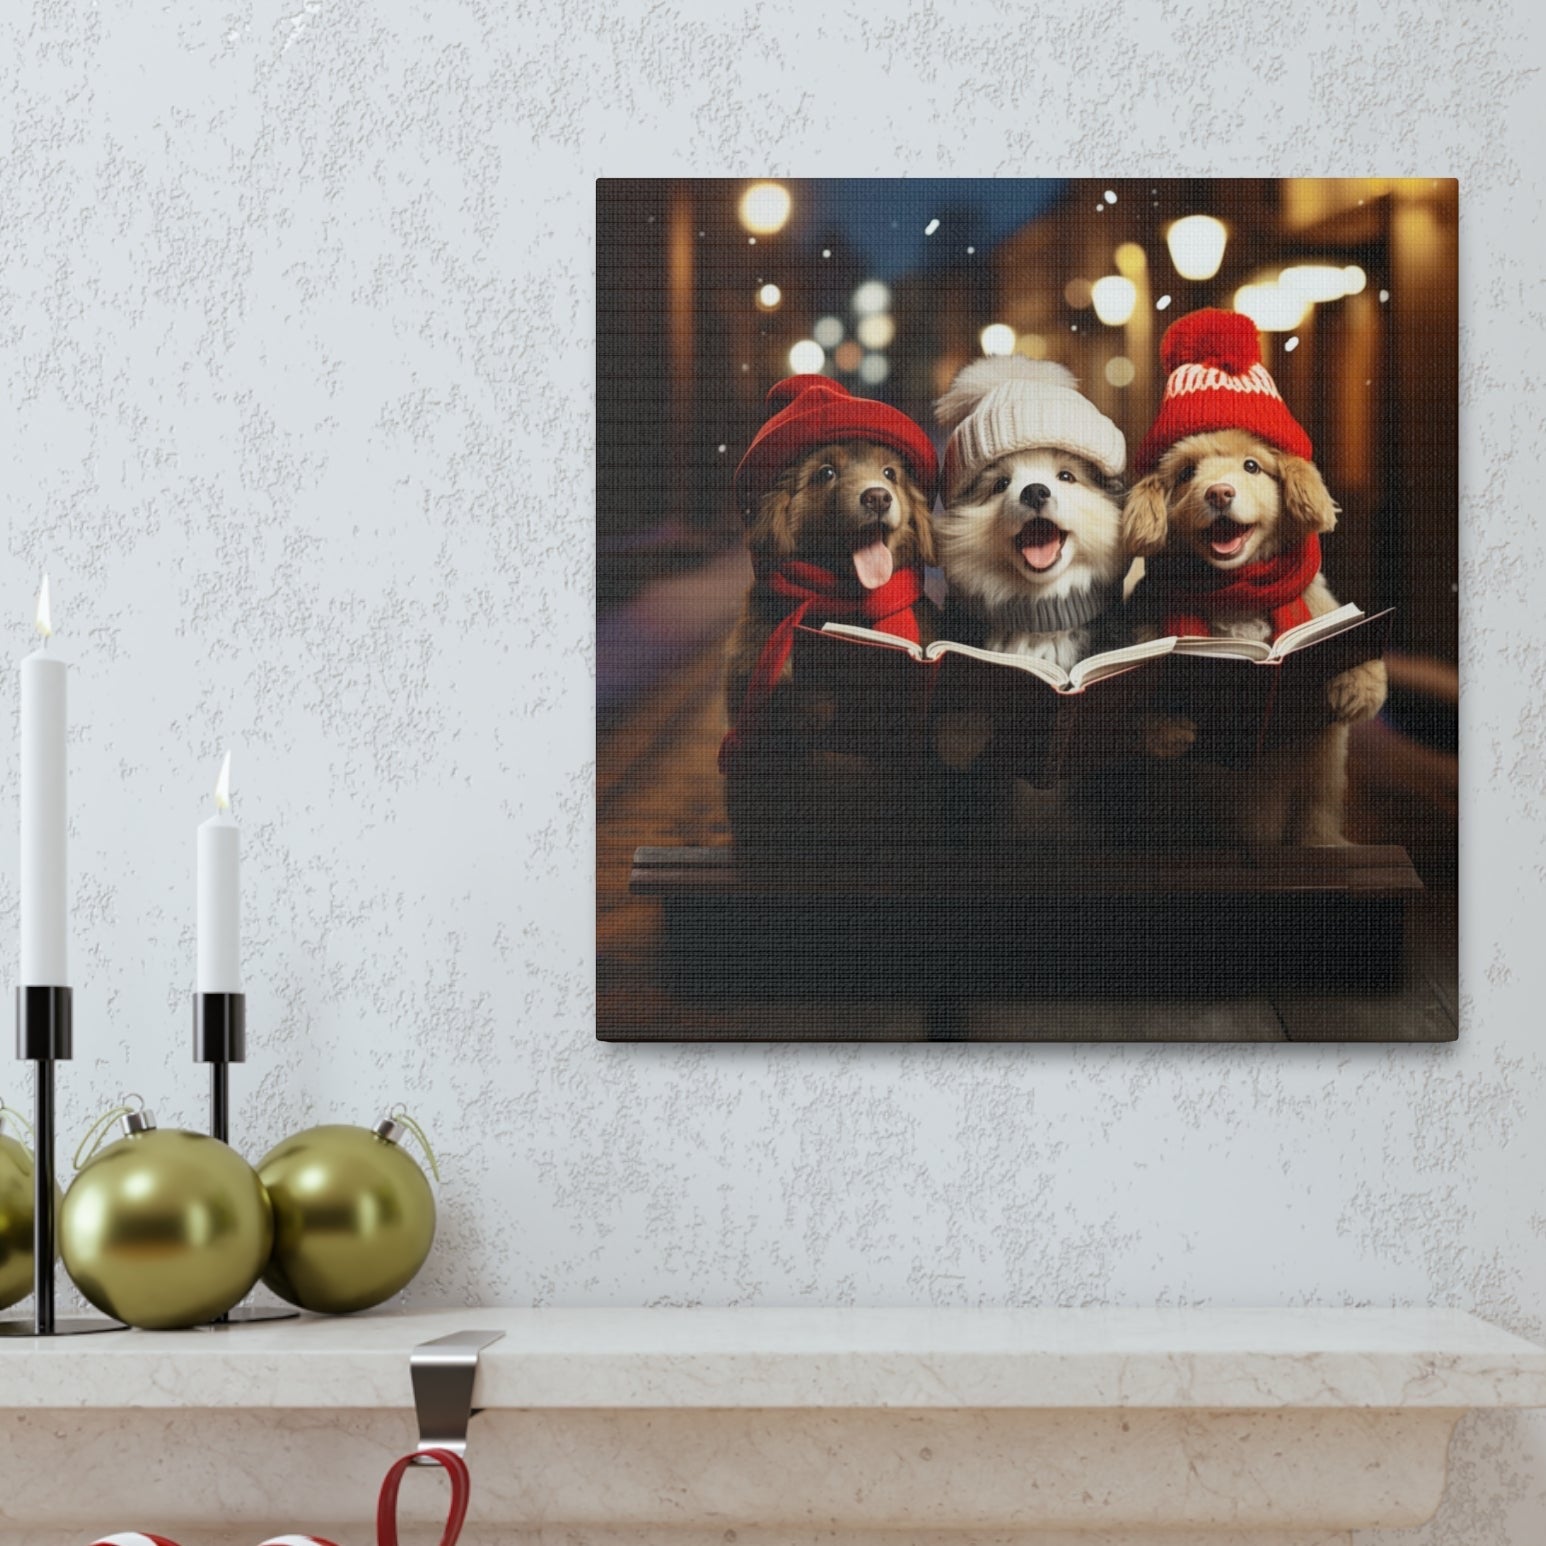 Christmas caroler dogs wall poster